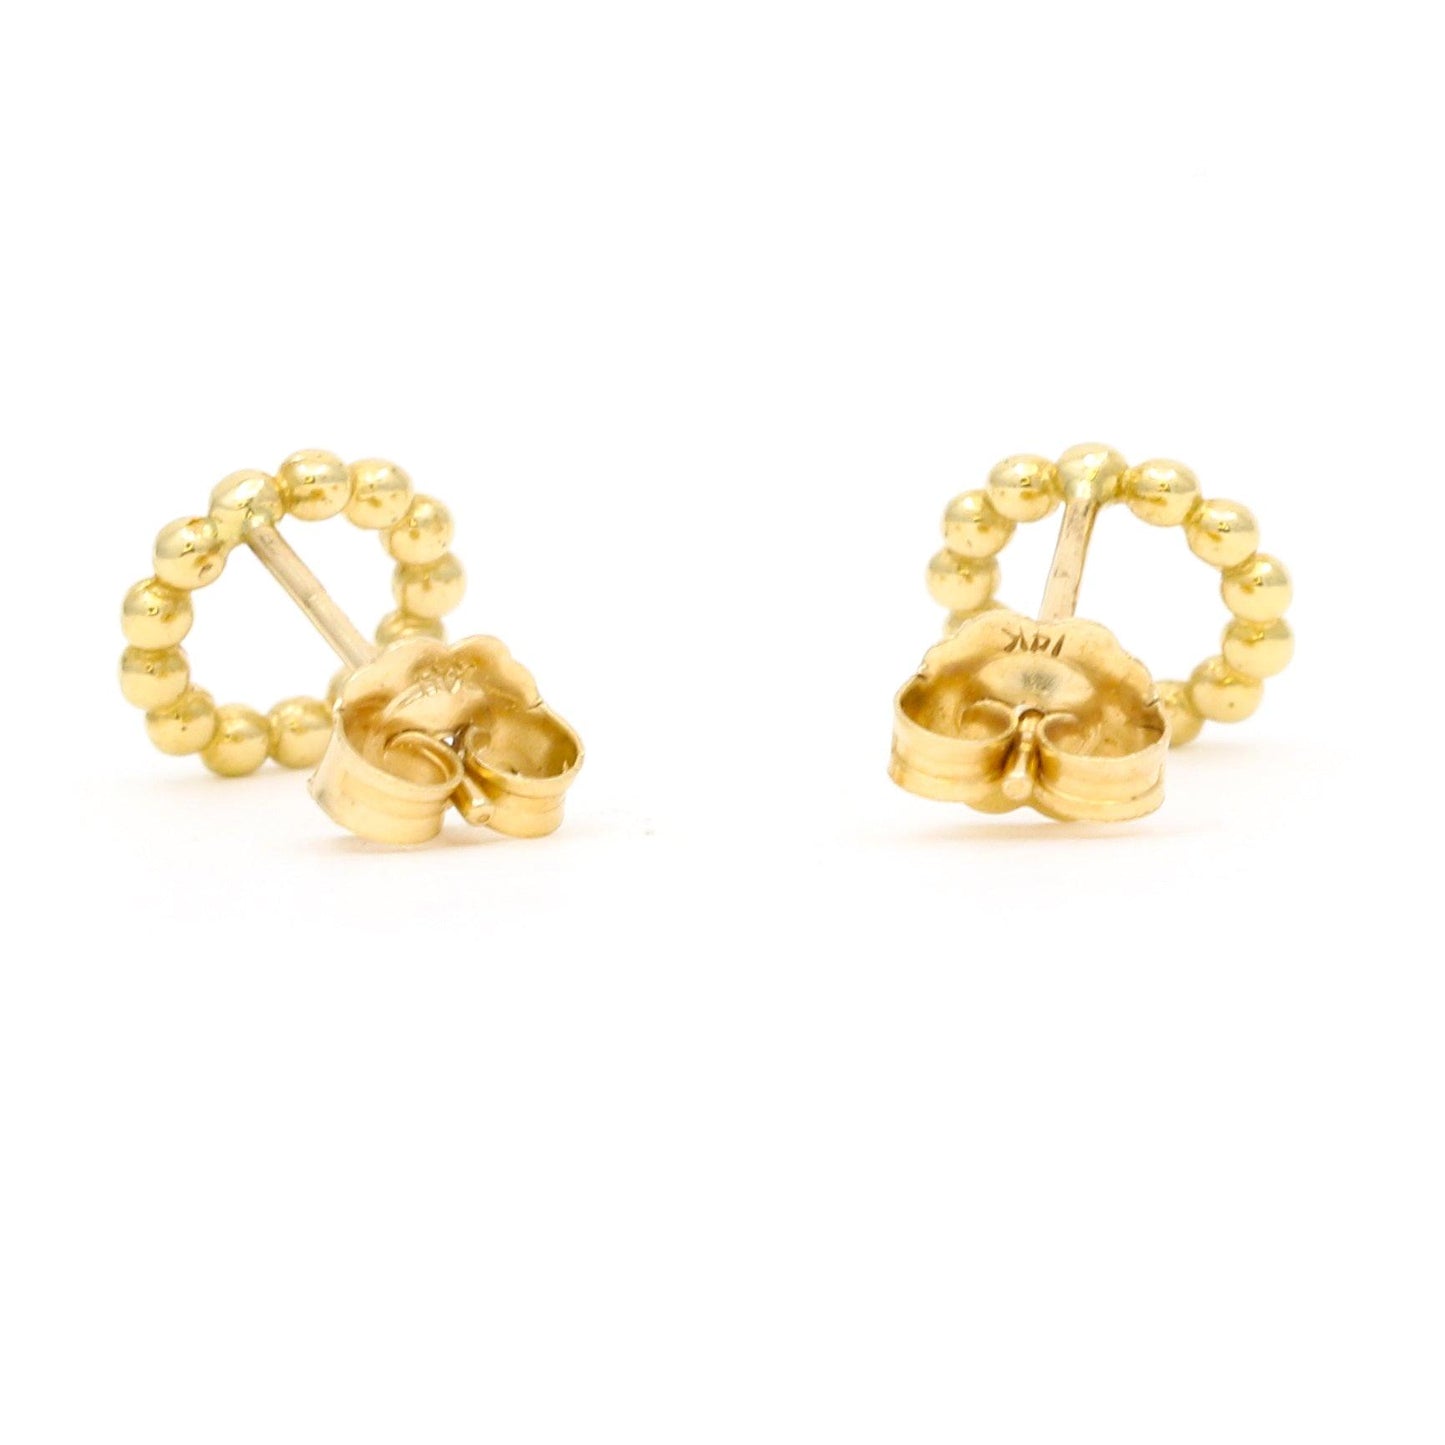 Women's Minimalist Beaded Open Circle Stud Earrings in 14k Yellow Gold - 31 Jewels Inc.